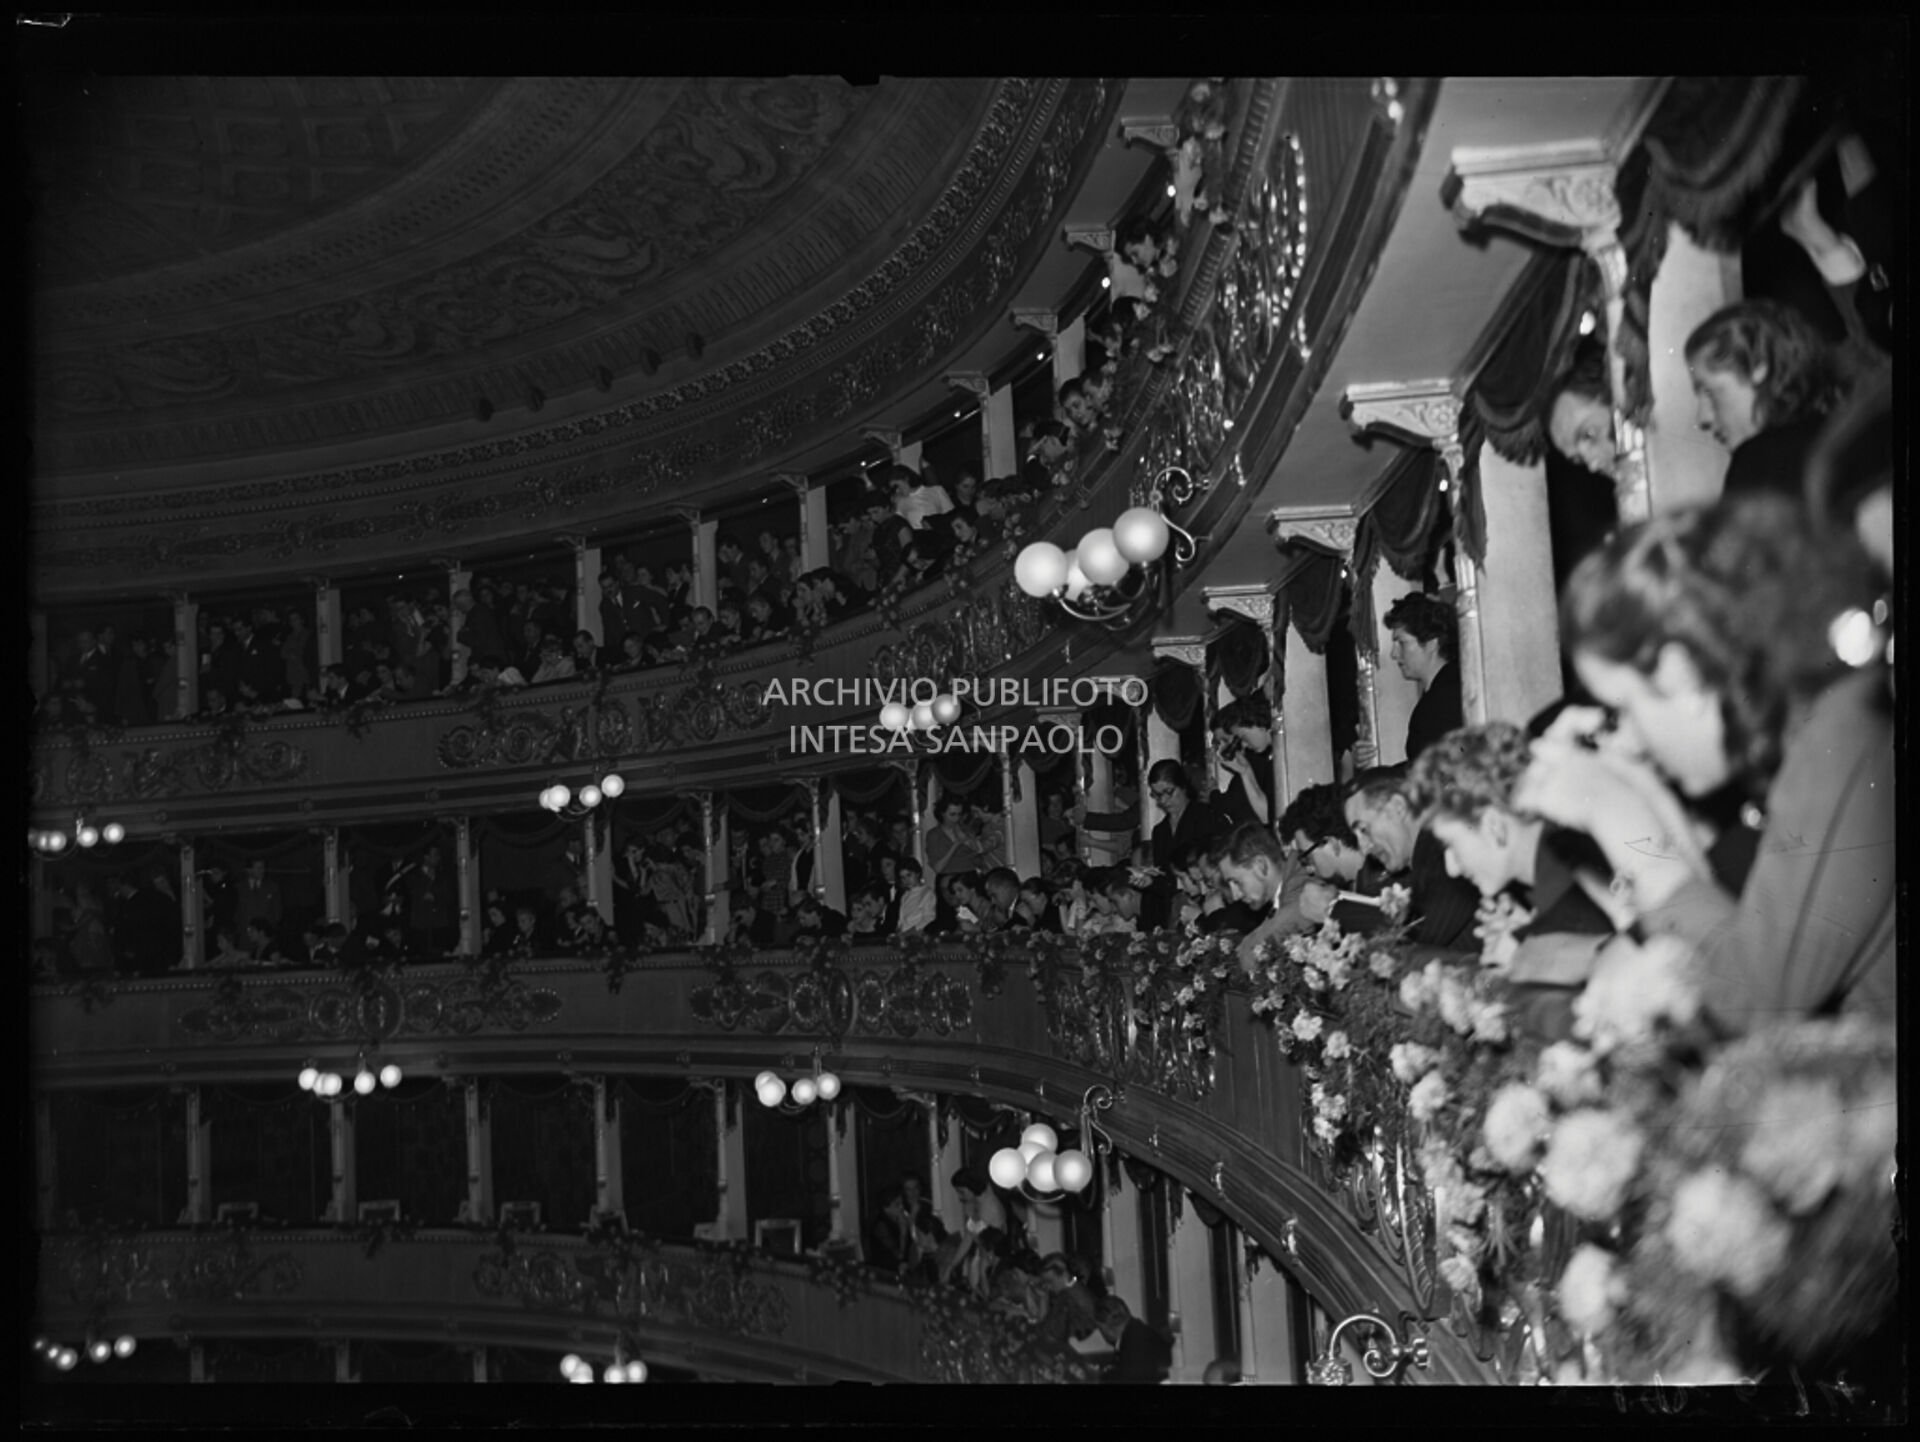 Il pubblico del loggione in occasione dell'inaugurazione della stagione lirica 1953-1954 del Teatro alla Scala con l'opera "La Wally", di Alfredo Catalani, diretta da Carlo Maria Giulini, con la regia di Tatiana Pavlova